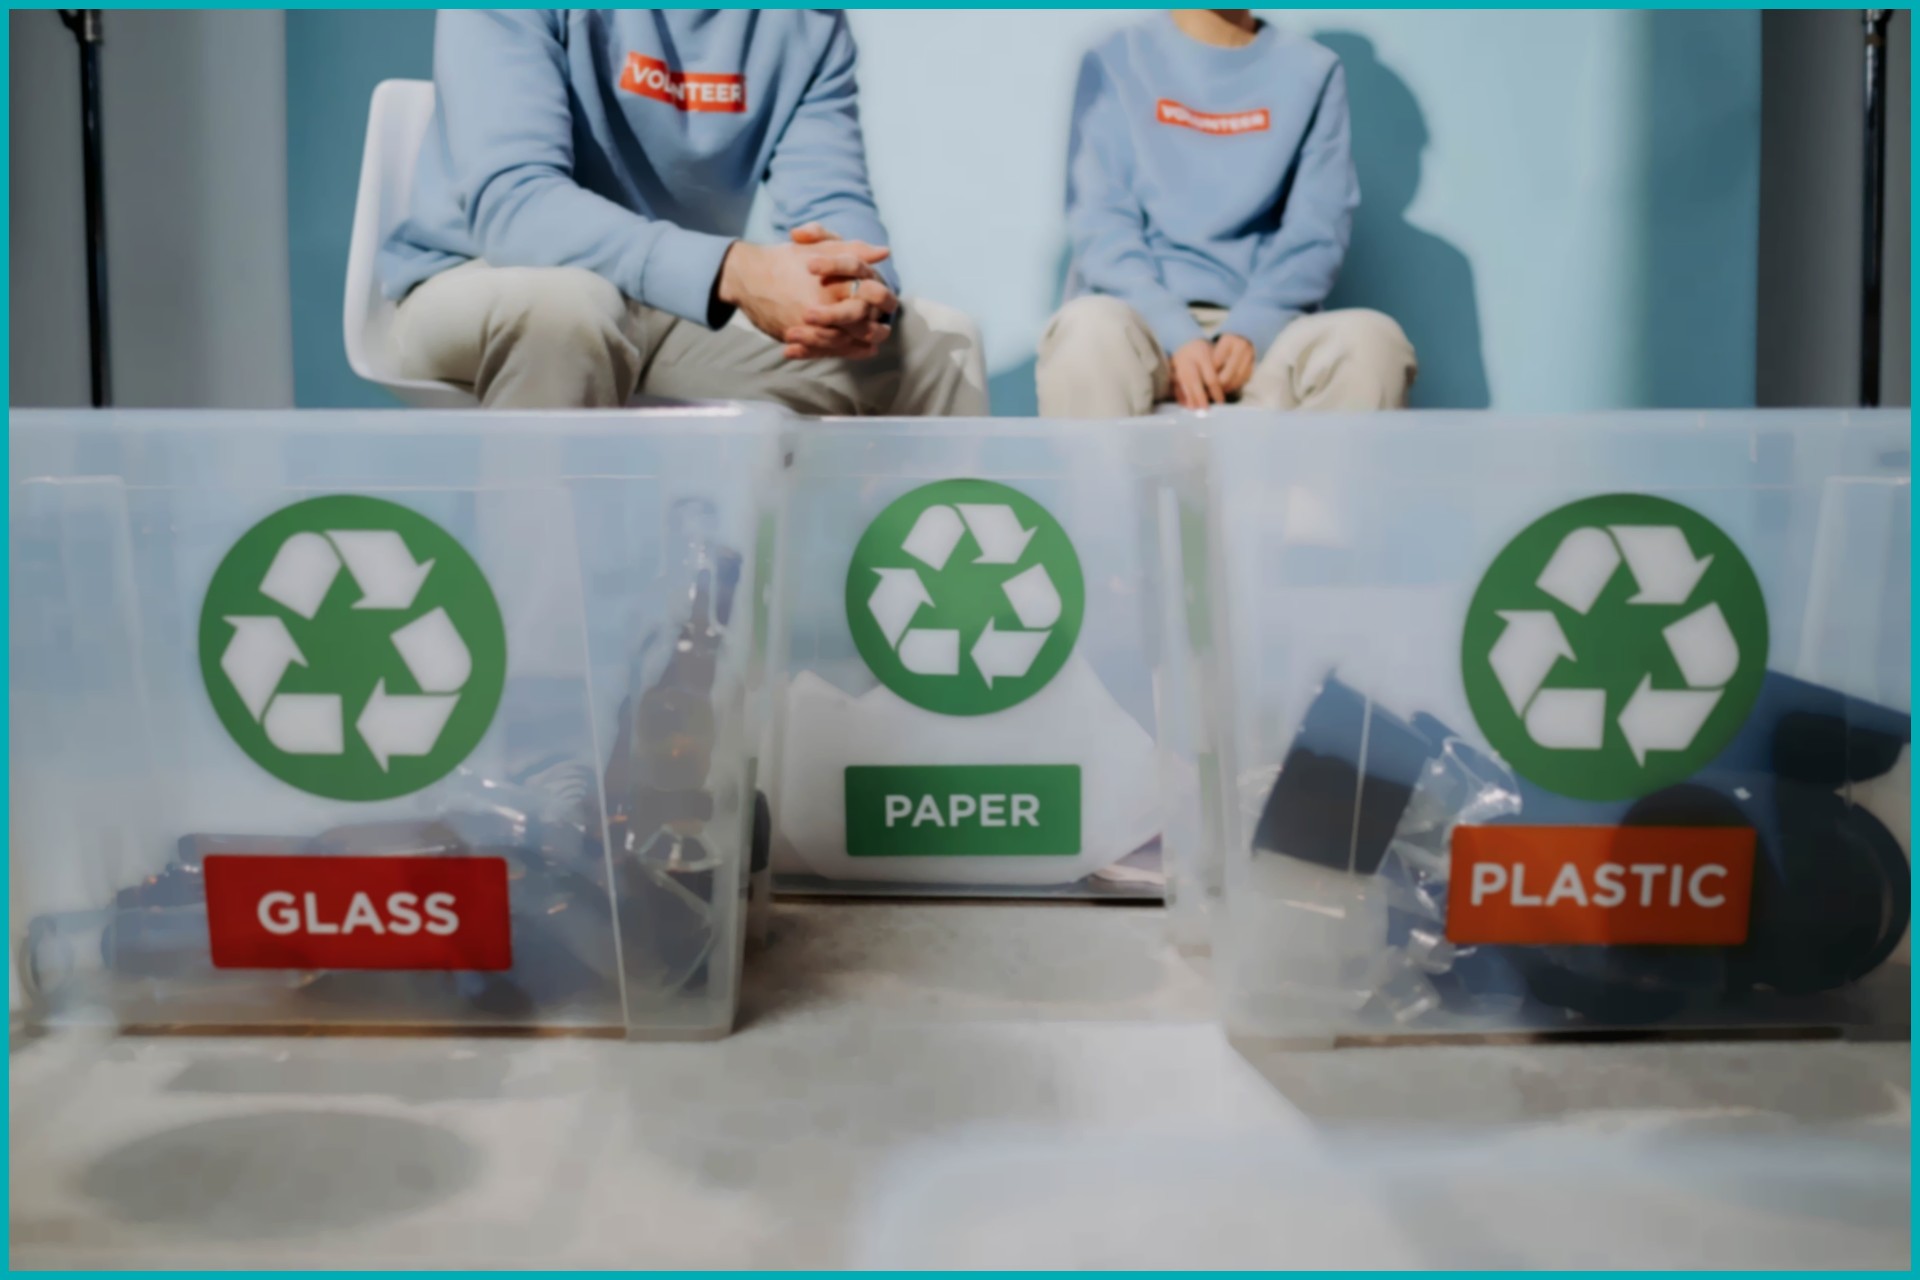 Programa de reciclagem nas empresas: Como implementar?